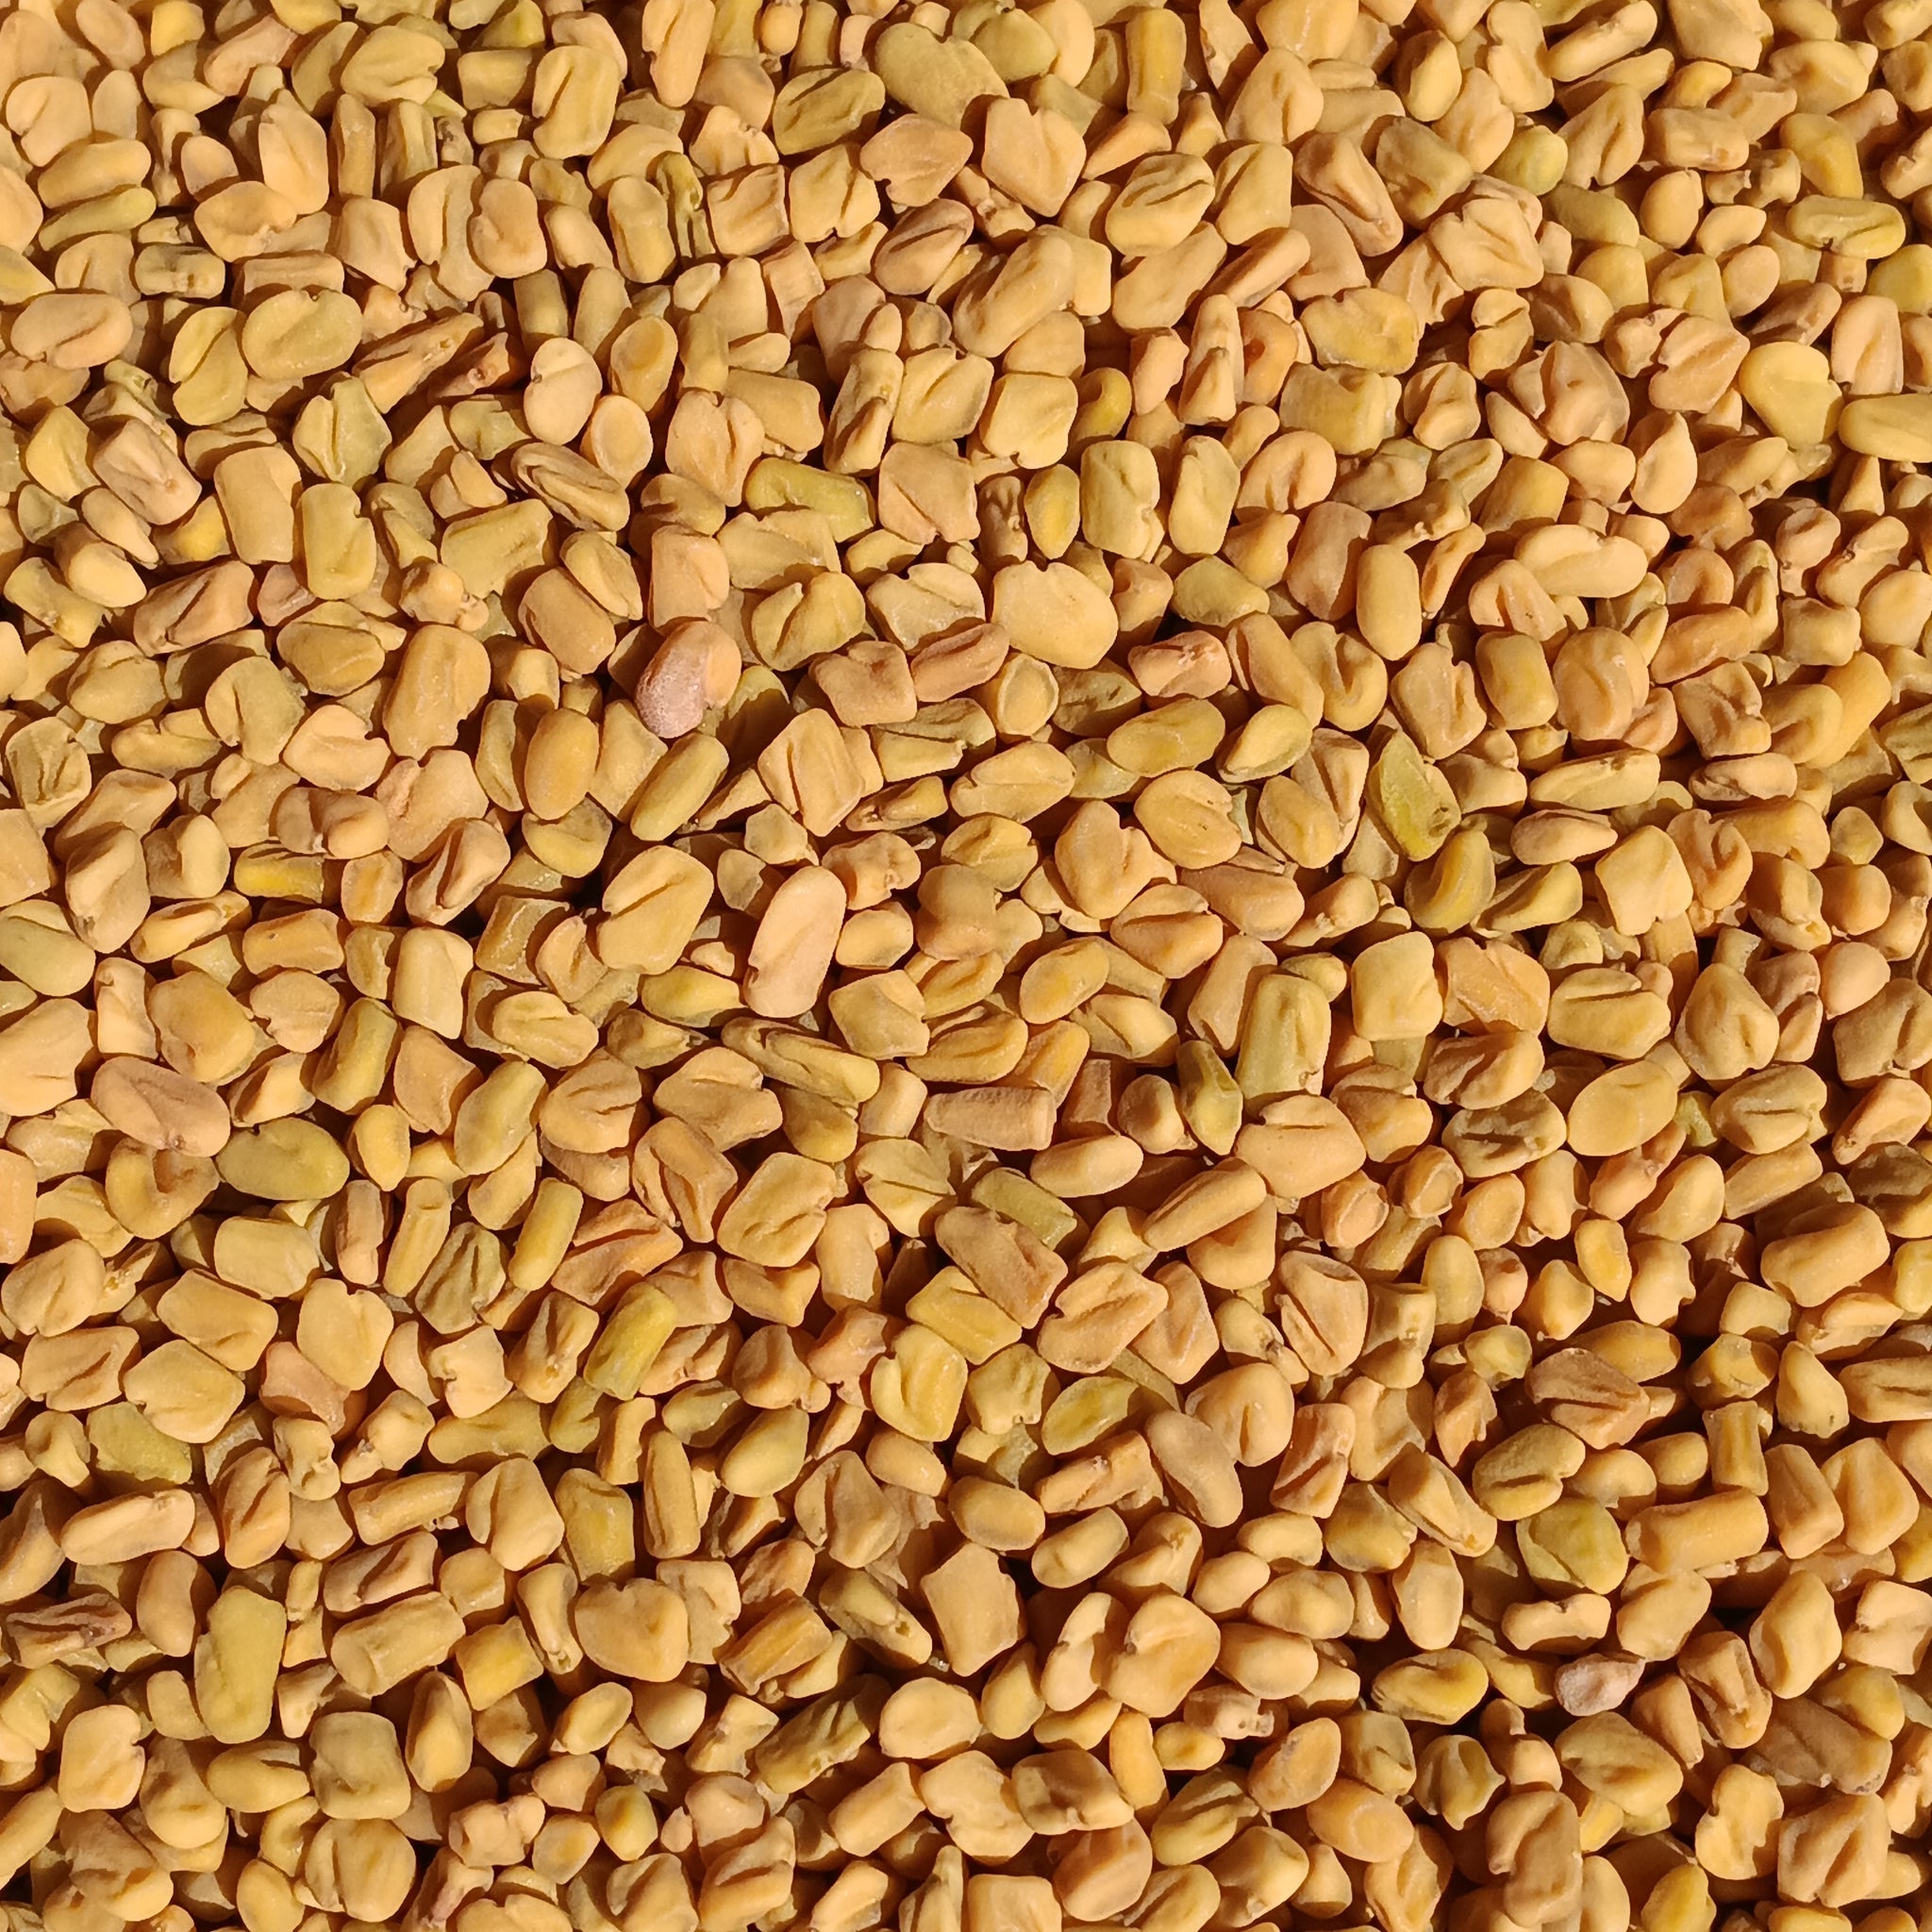 Fenugreek Seeds (Trigonella Foenum-Graecum)